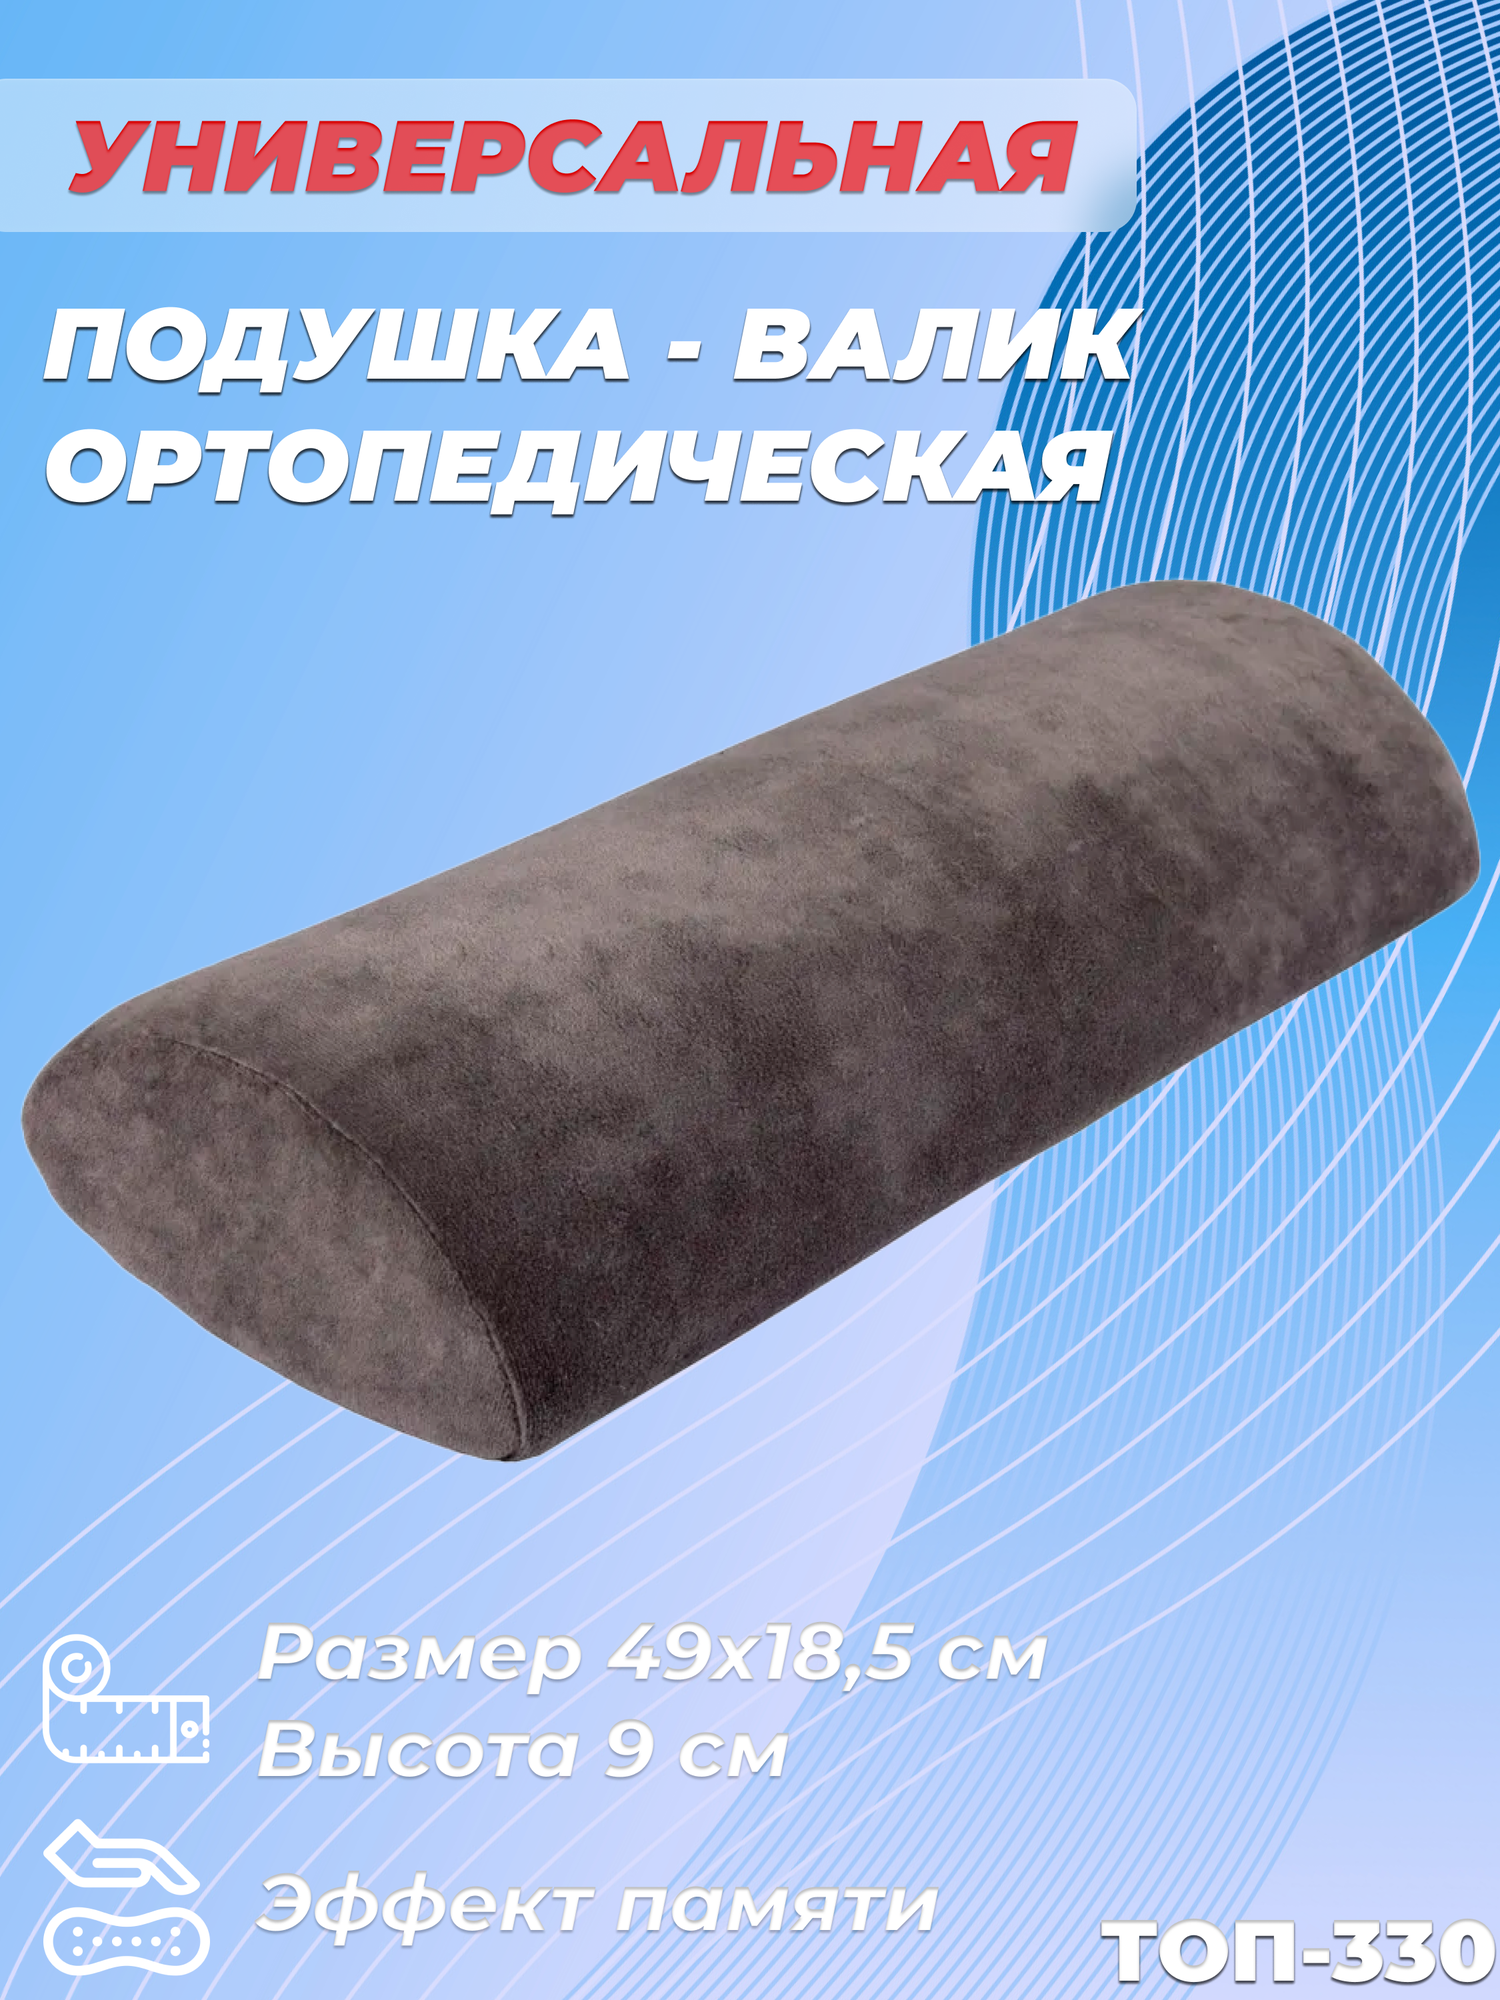 Ортопедическая подушка валик под шею, под поясницу, под ноги с эффектом памяти Тривес ТОП-330, 49x18,5 см, высота 9 см